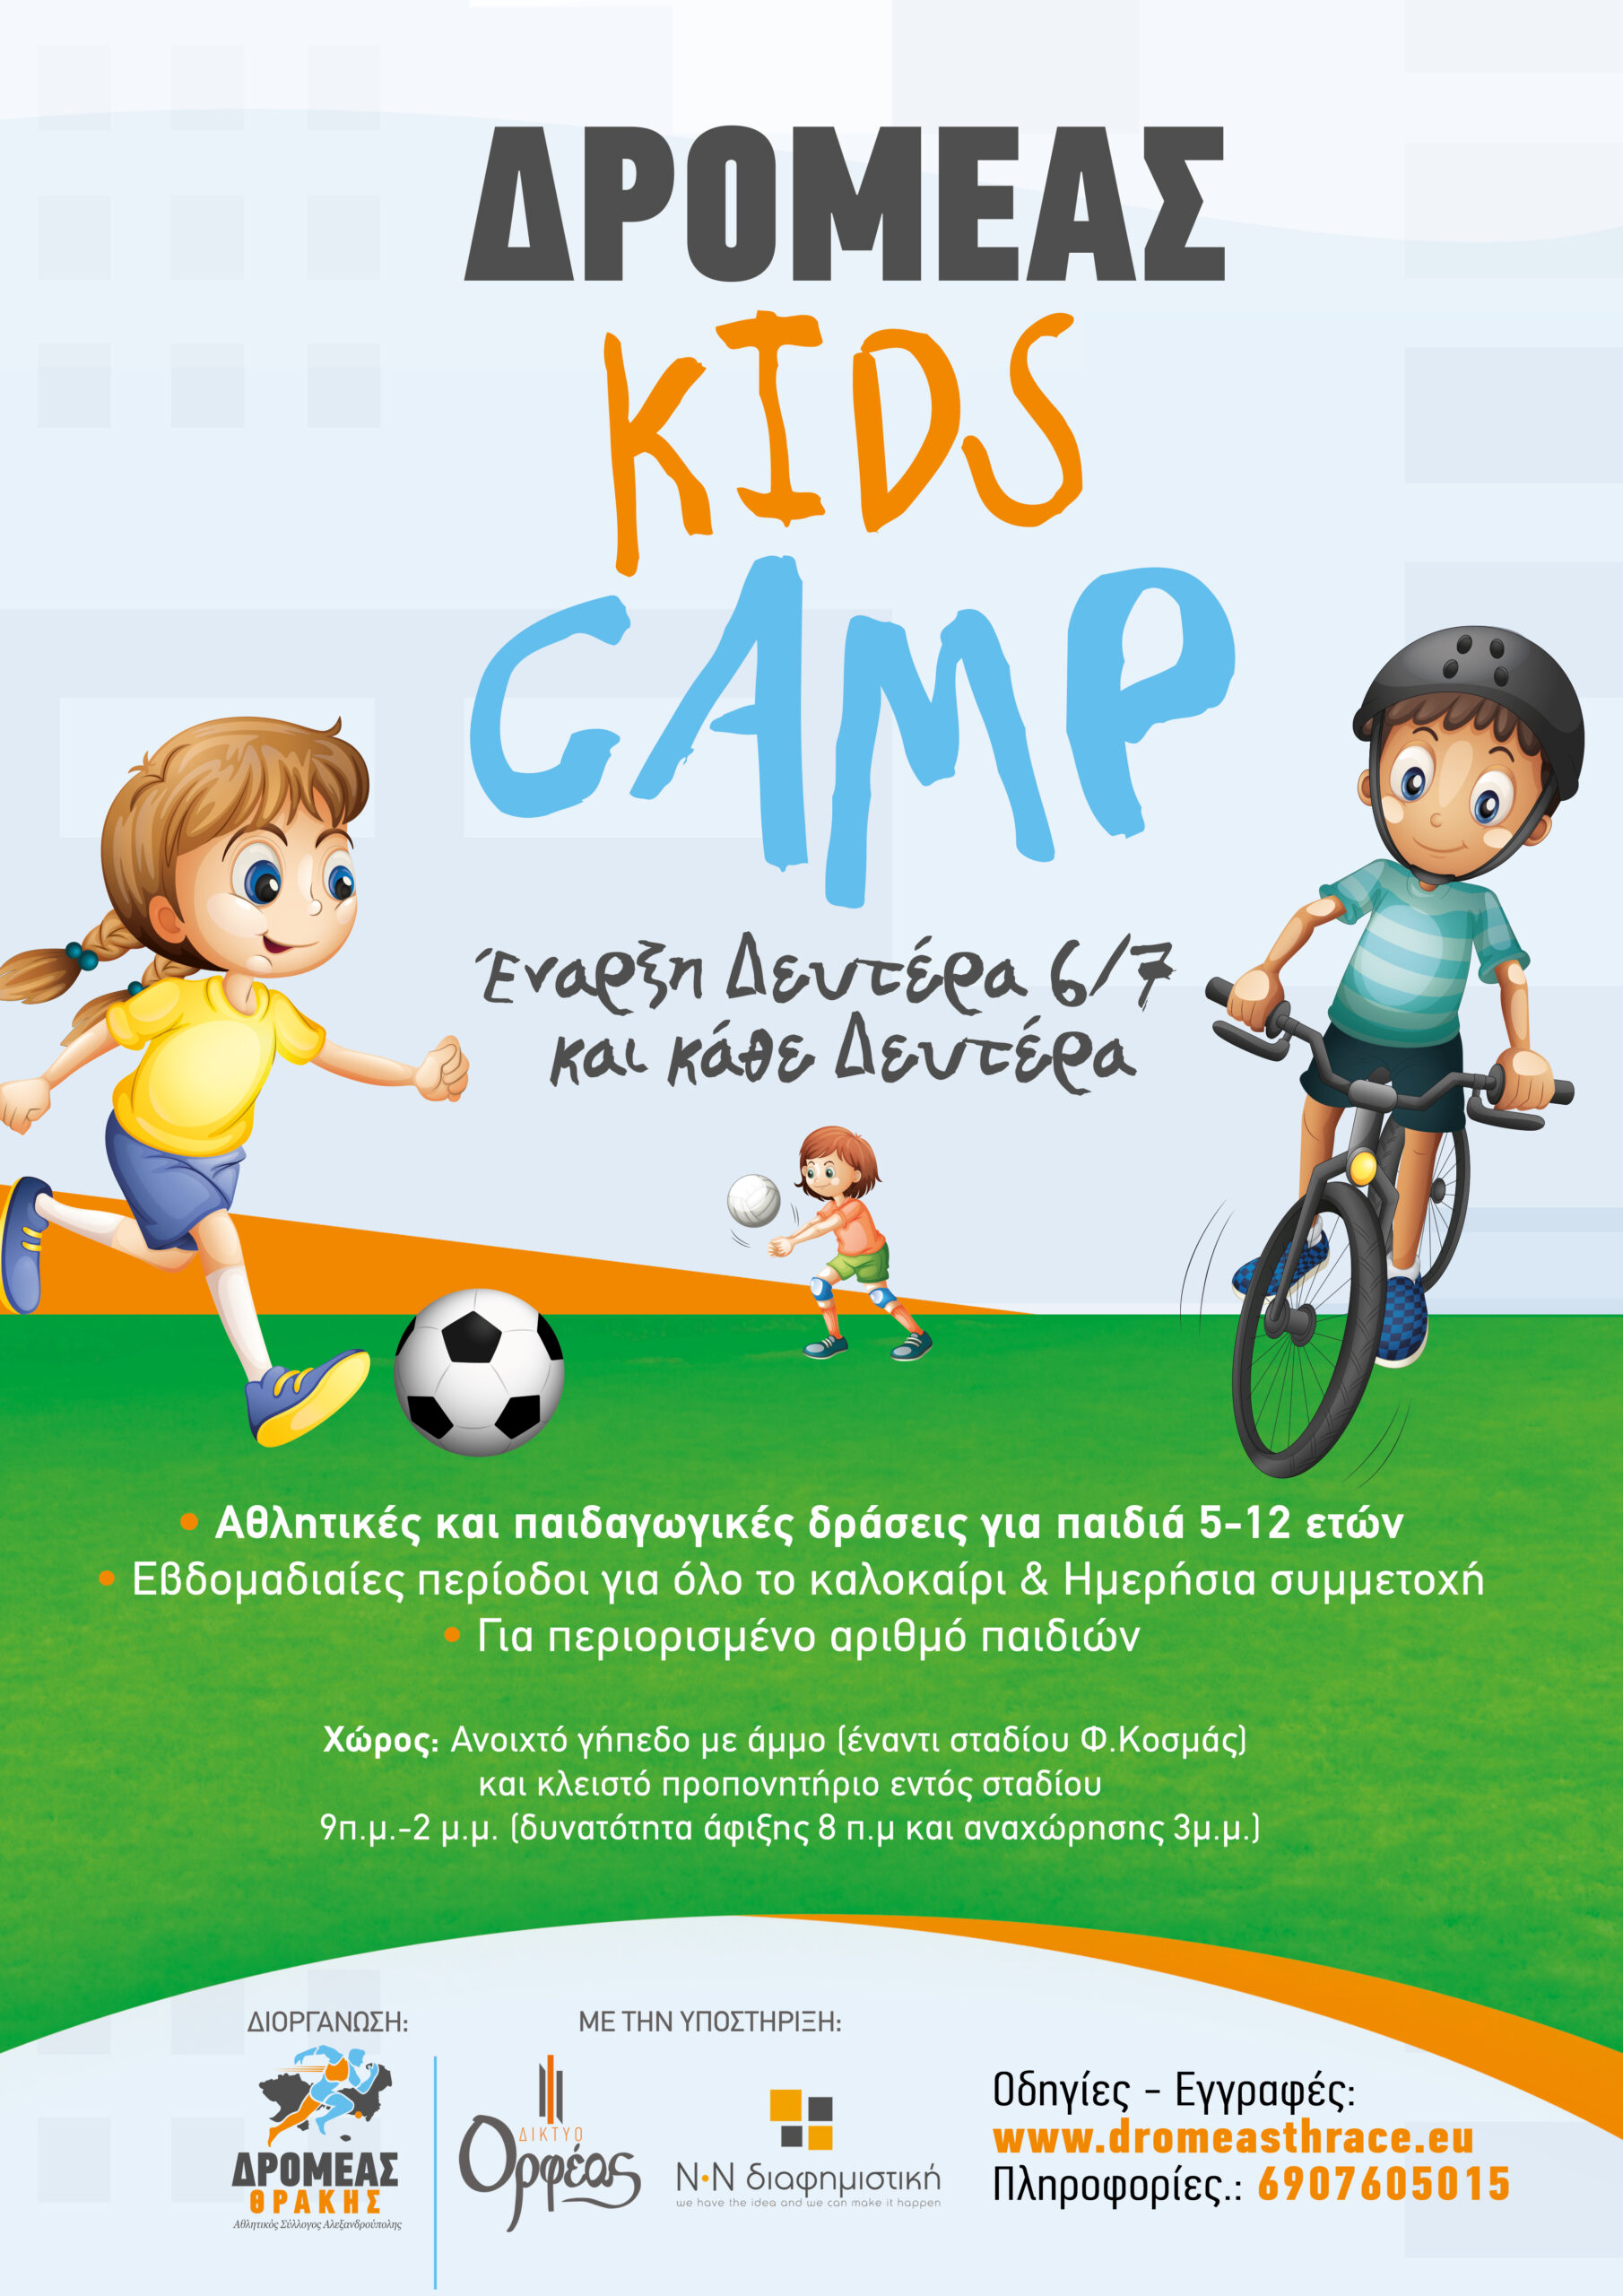 Ξεκινά την Δευτέρα 6/7 και για όλο το καλοκαίρι το ΔΡΟΜΕΑΣ KIDS CAMP